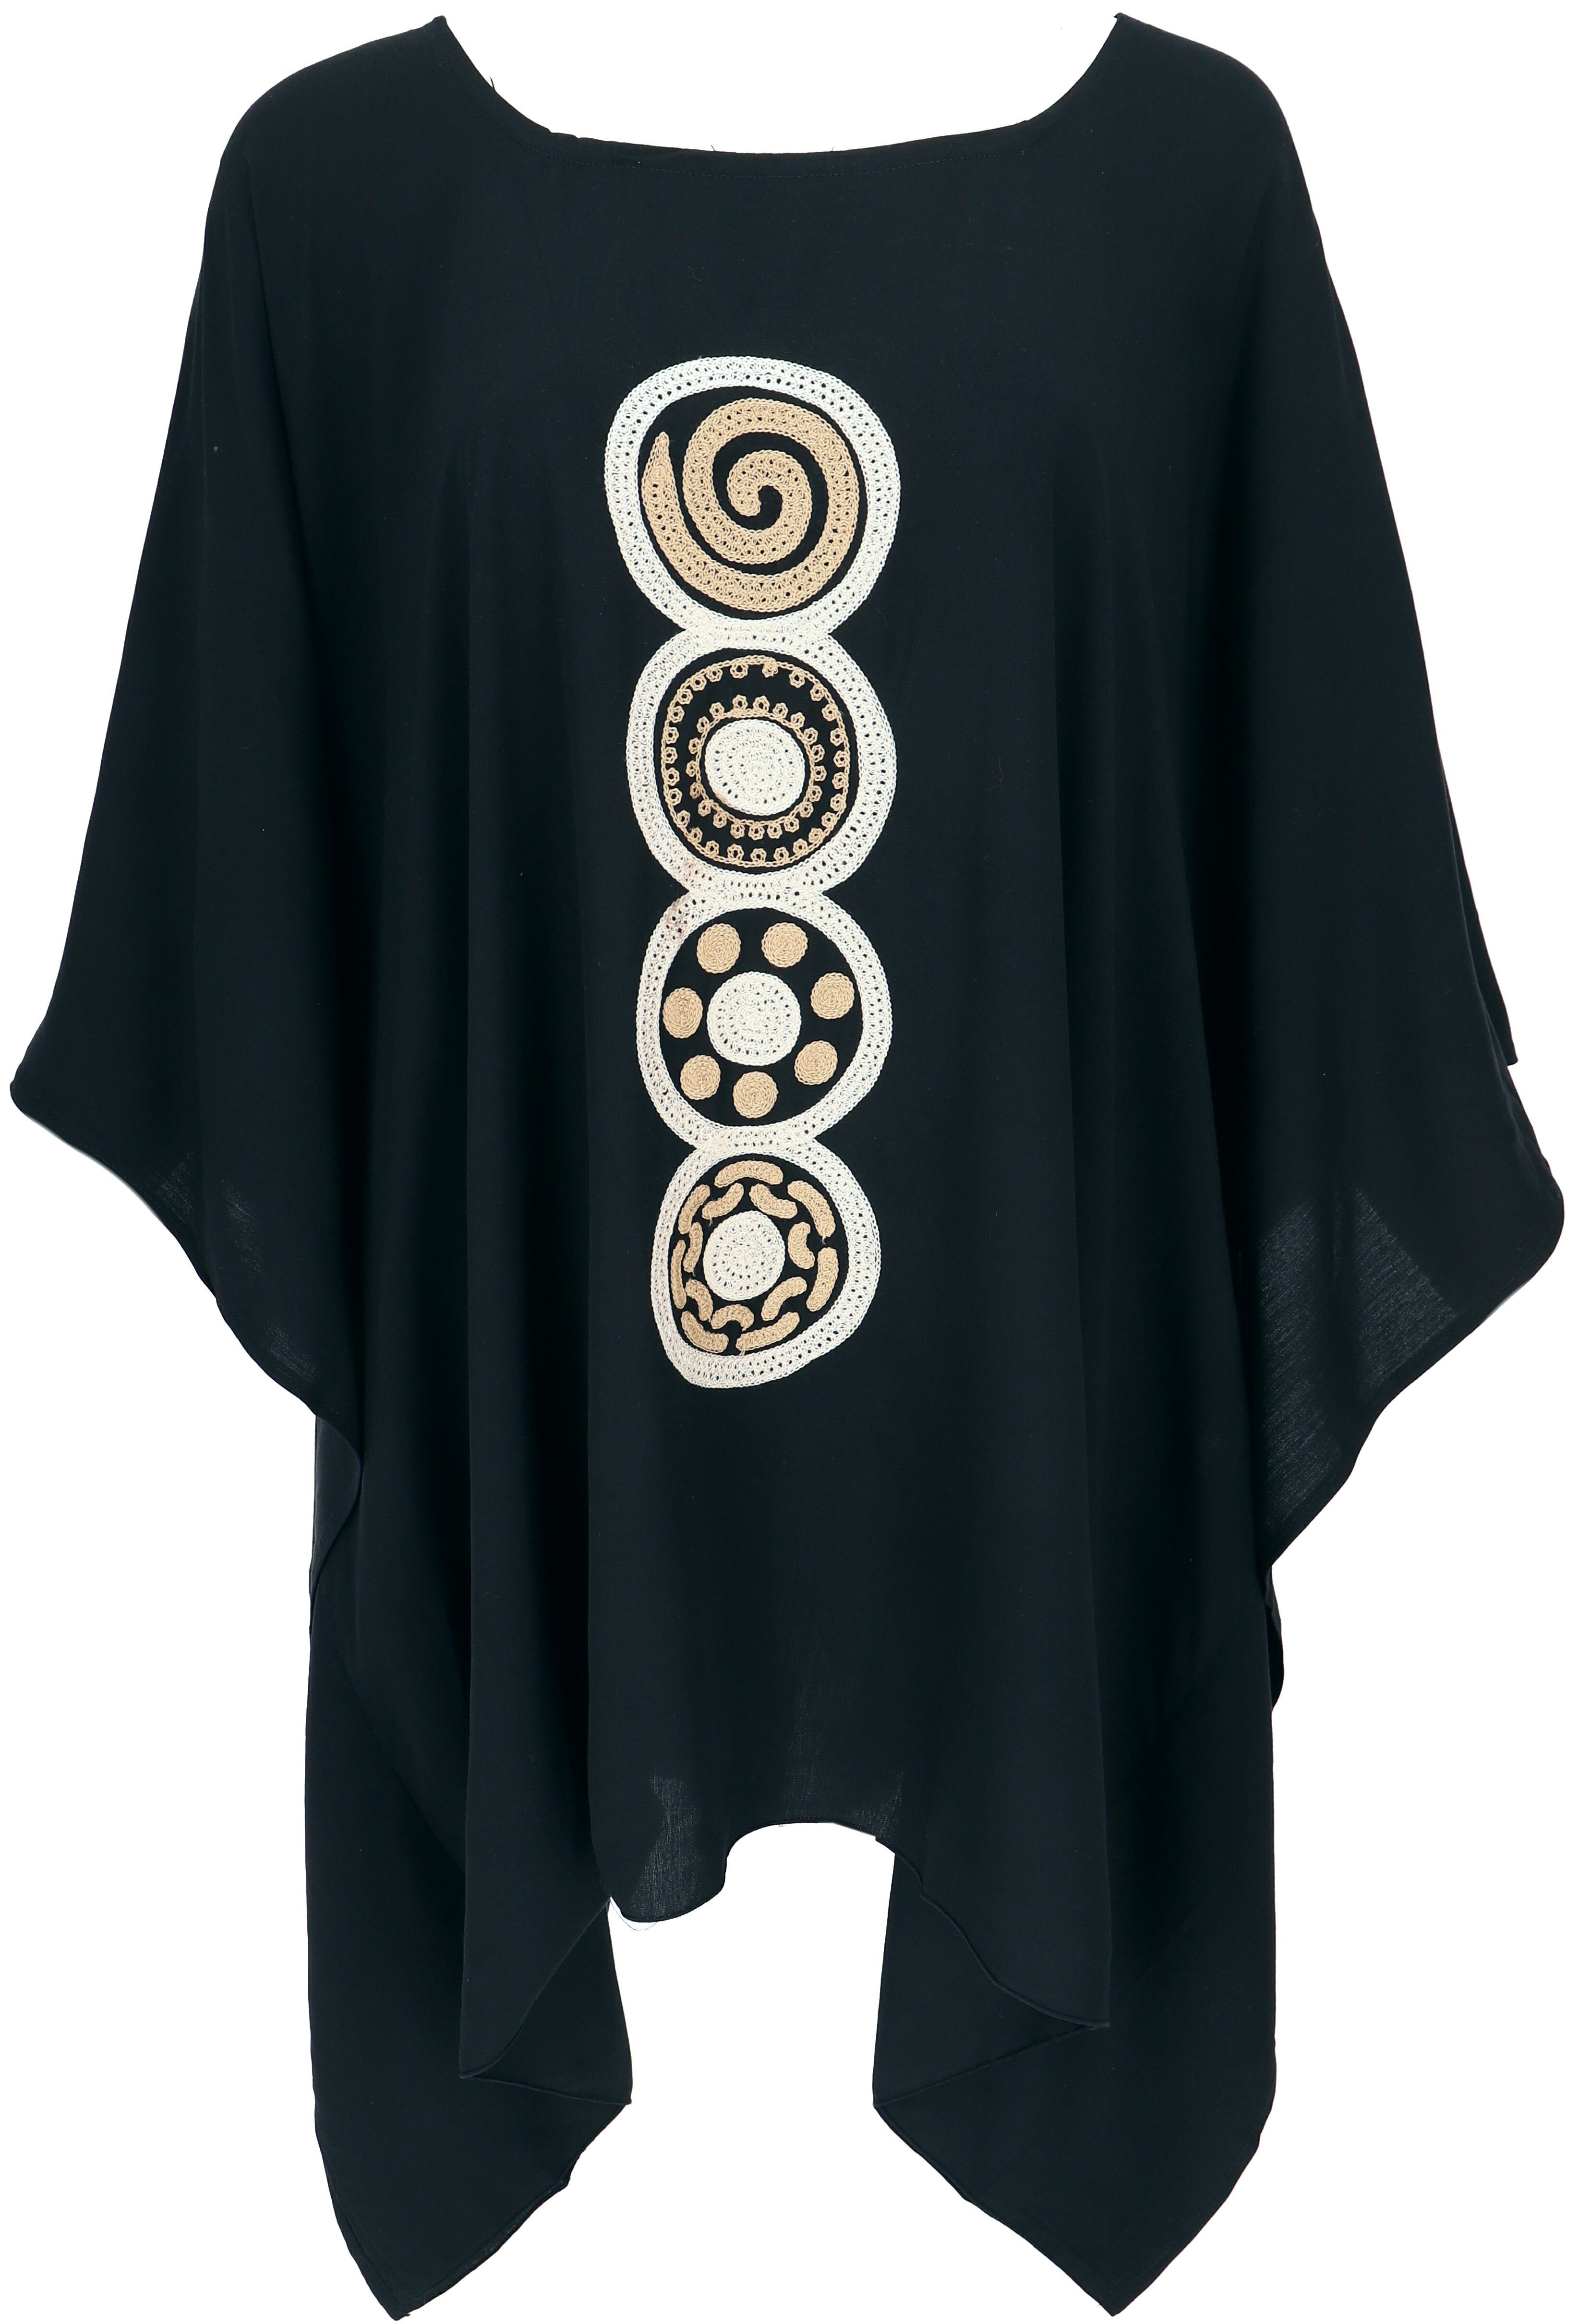 Guru-Shop Longbluse Besticktes Hippie Ponchokleid, Minikleid.. alternative Bekleidung schwarz